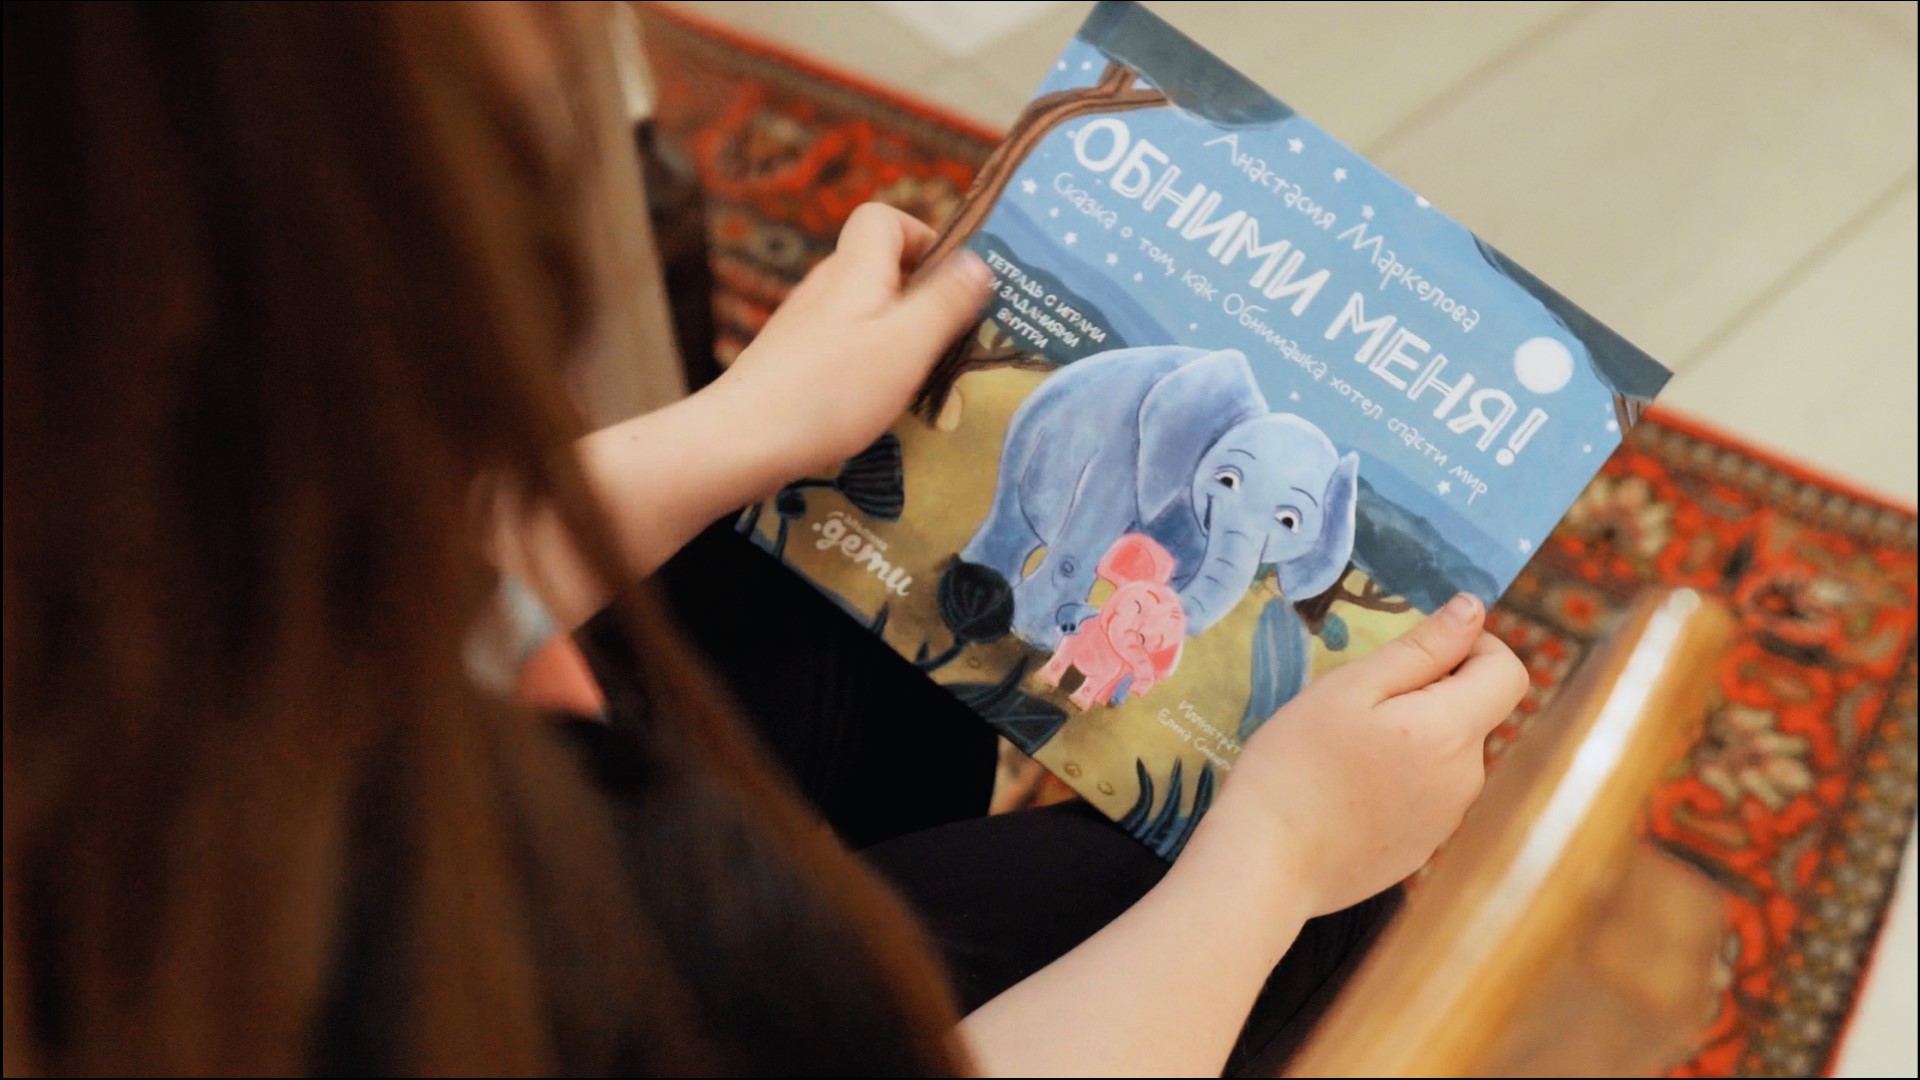  ЗМК и «Альпина. Паблишер» выпустили новую книгу про слонов Обнимаму и Обнимашку